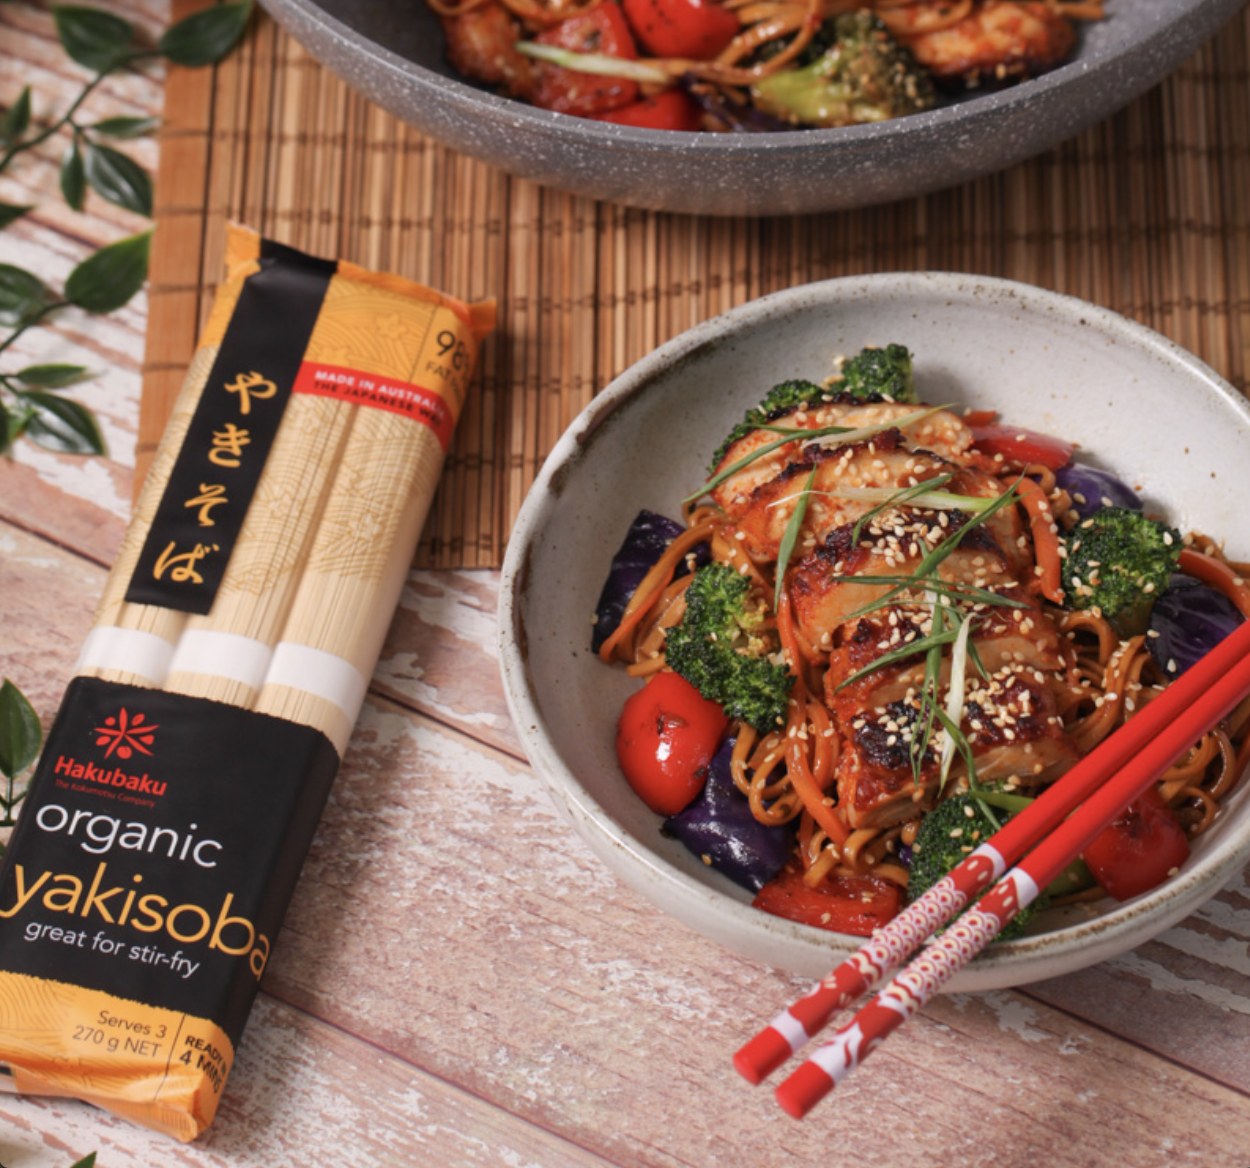 Organic Yakisoba Noodles - Hakubaku